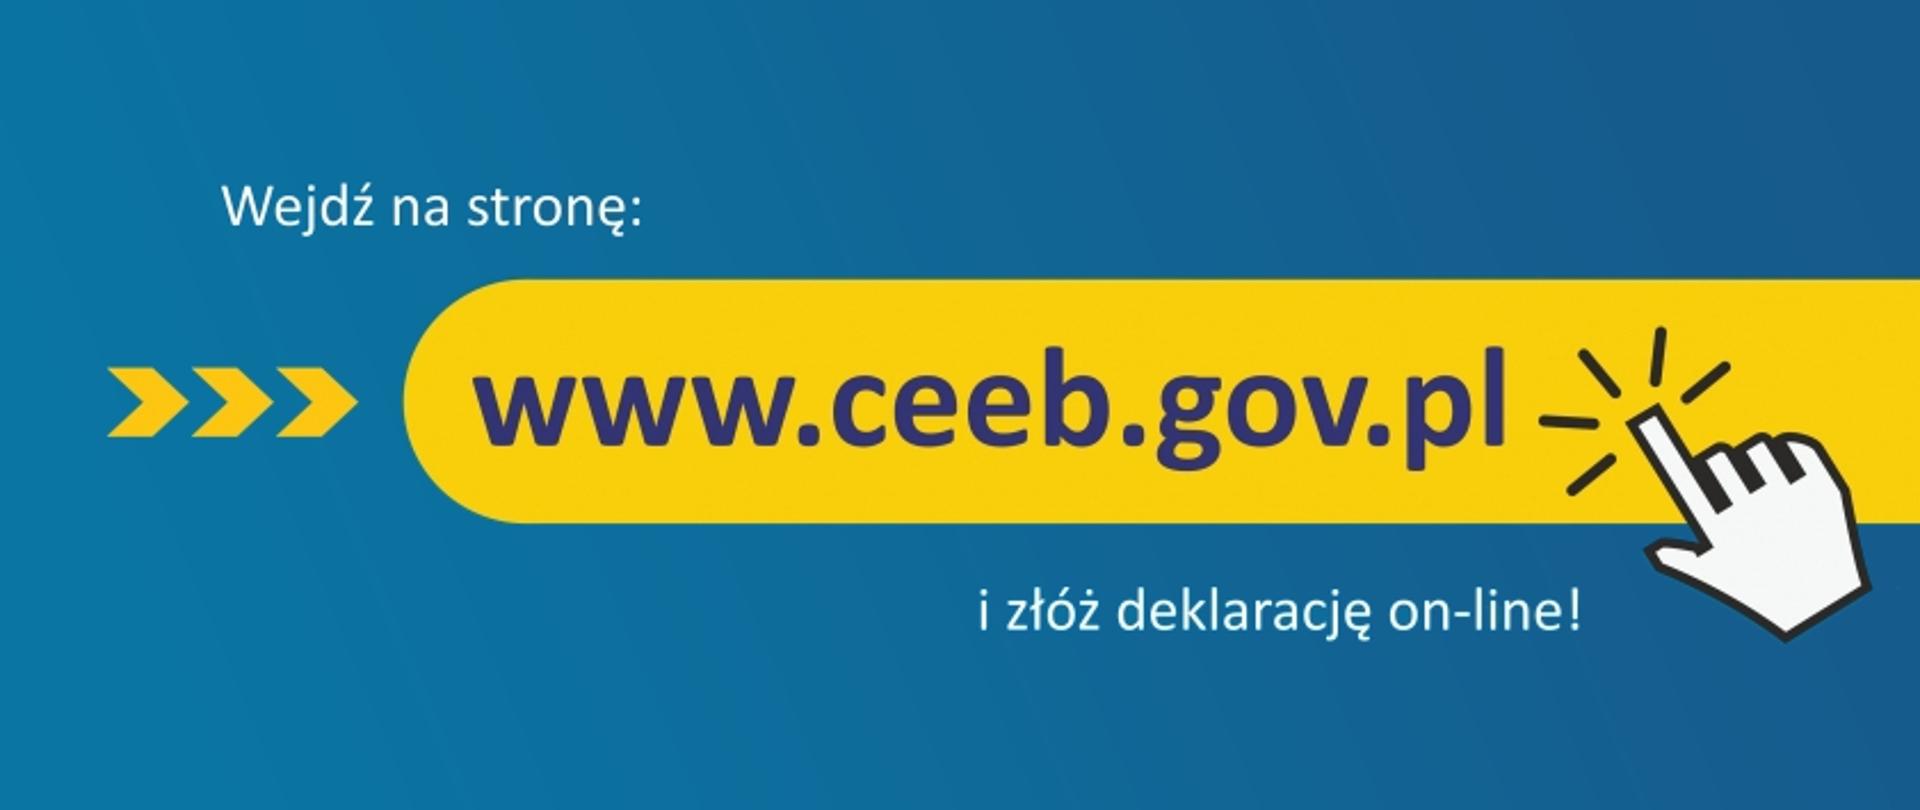 Tekst "Wejdź na stronę www.ceeb.gov.pl i złóż deklarację on-line!" z narysowaną dłonią klikającą w link www.ceeb.gov.pl